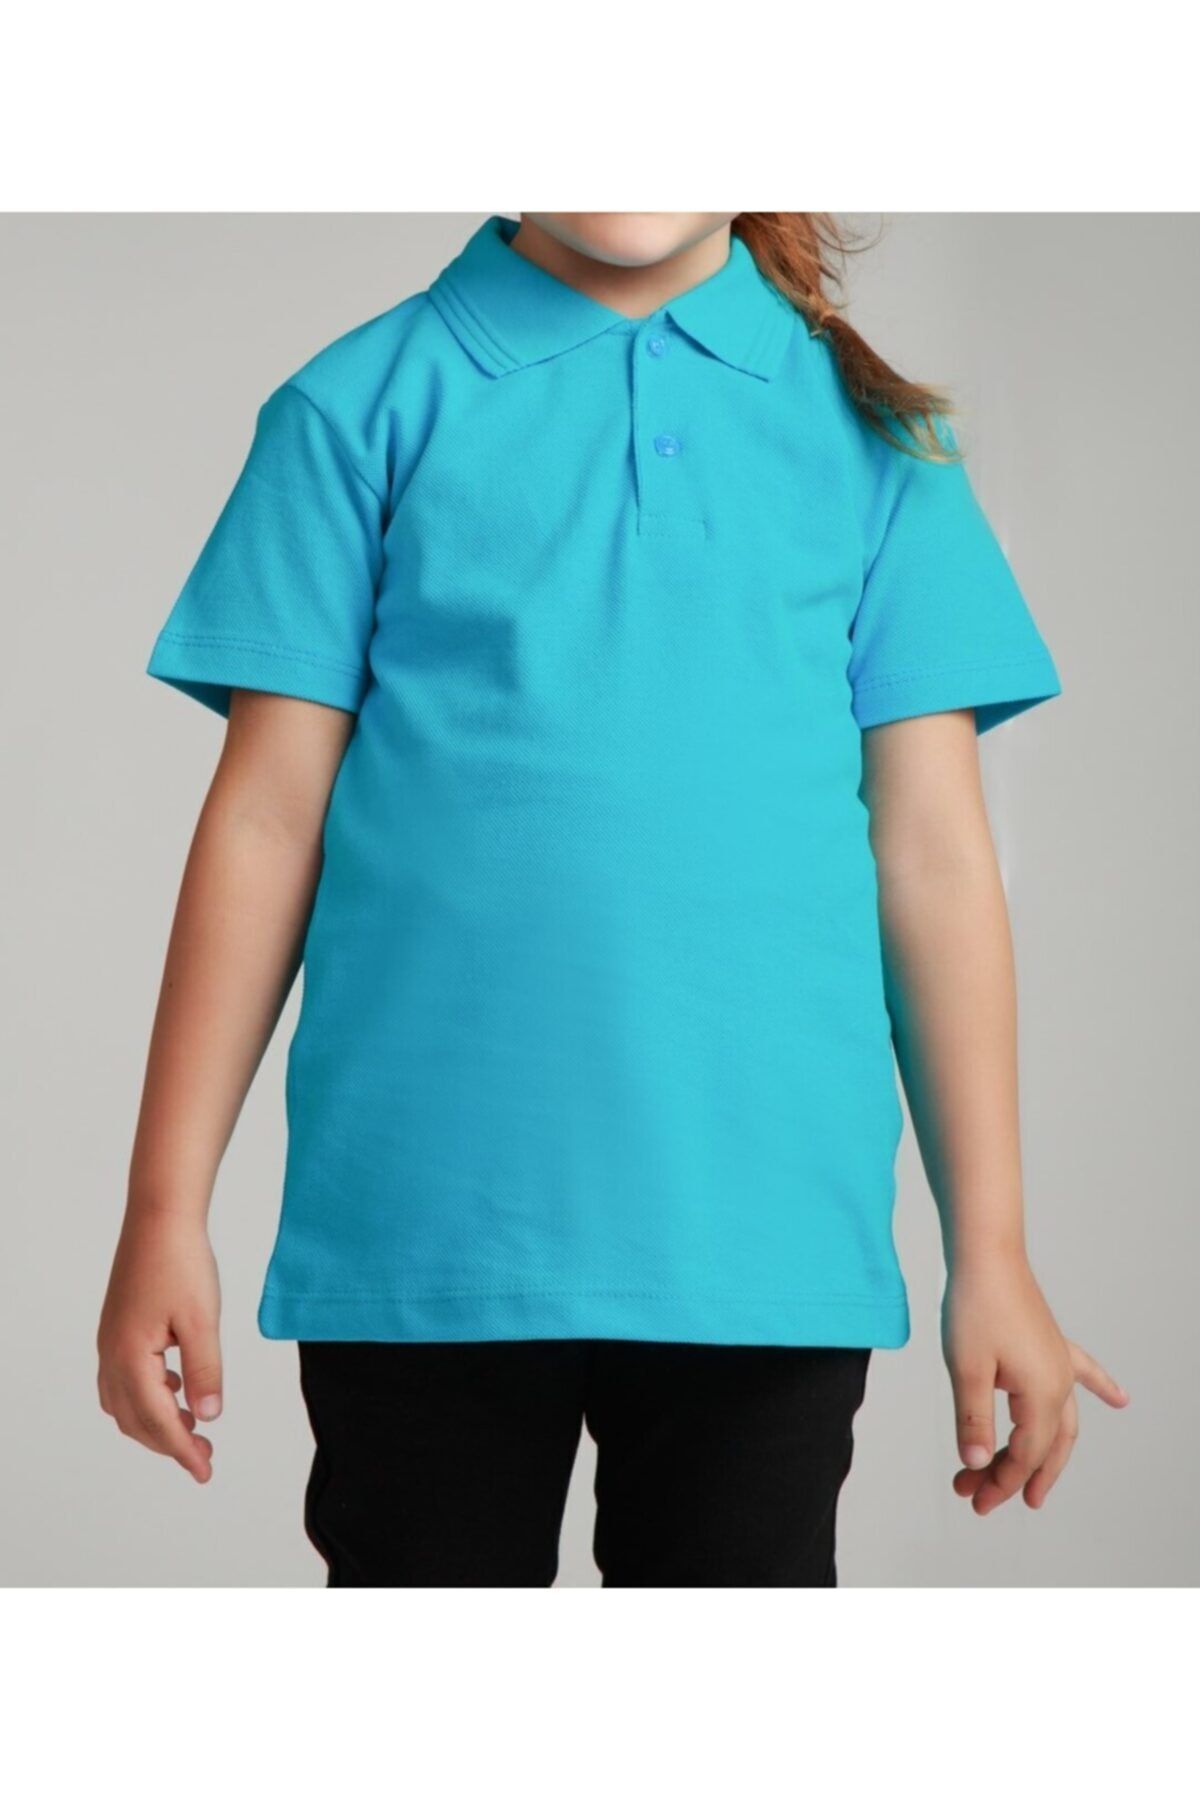 NACAR STORE Kız Çocuk Polo Yaka Kısa Kol Okul T-shirt